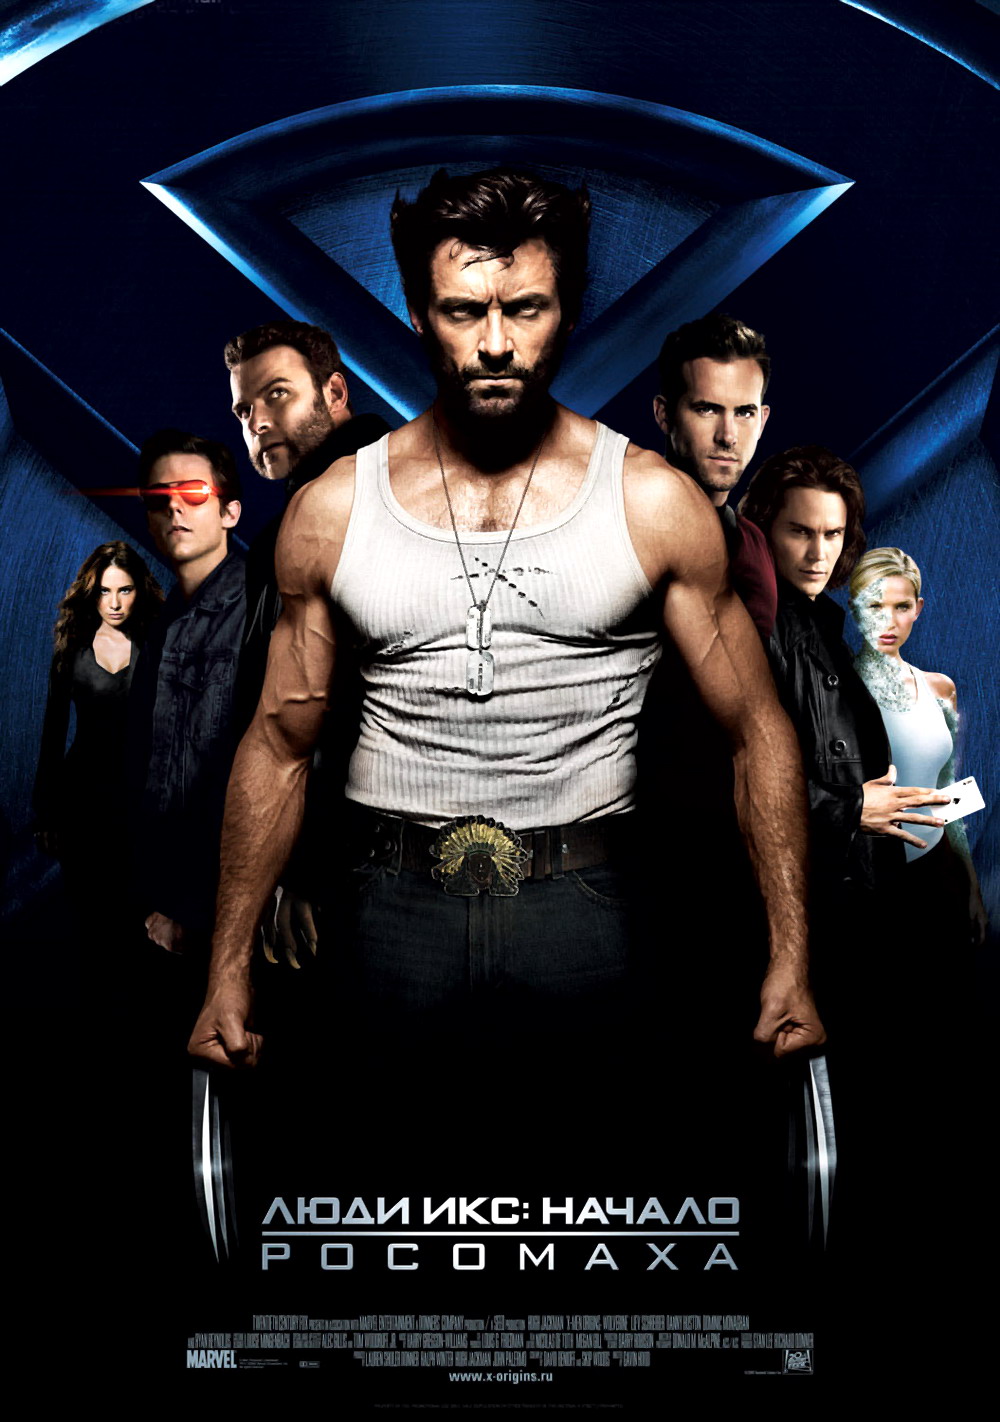  : .  (X-Men Origins: Wolverine, 2009)